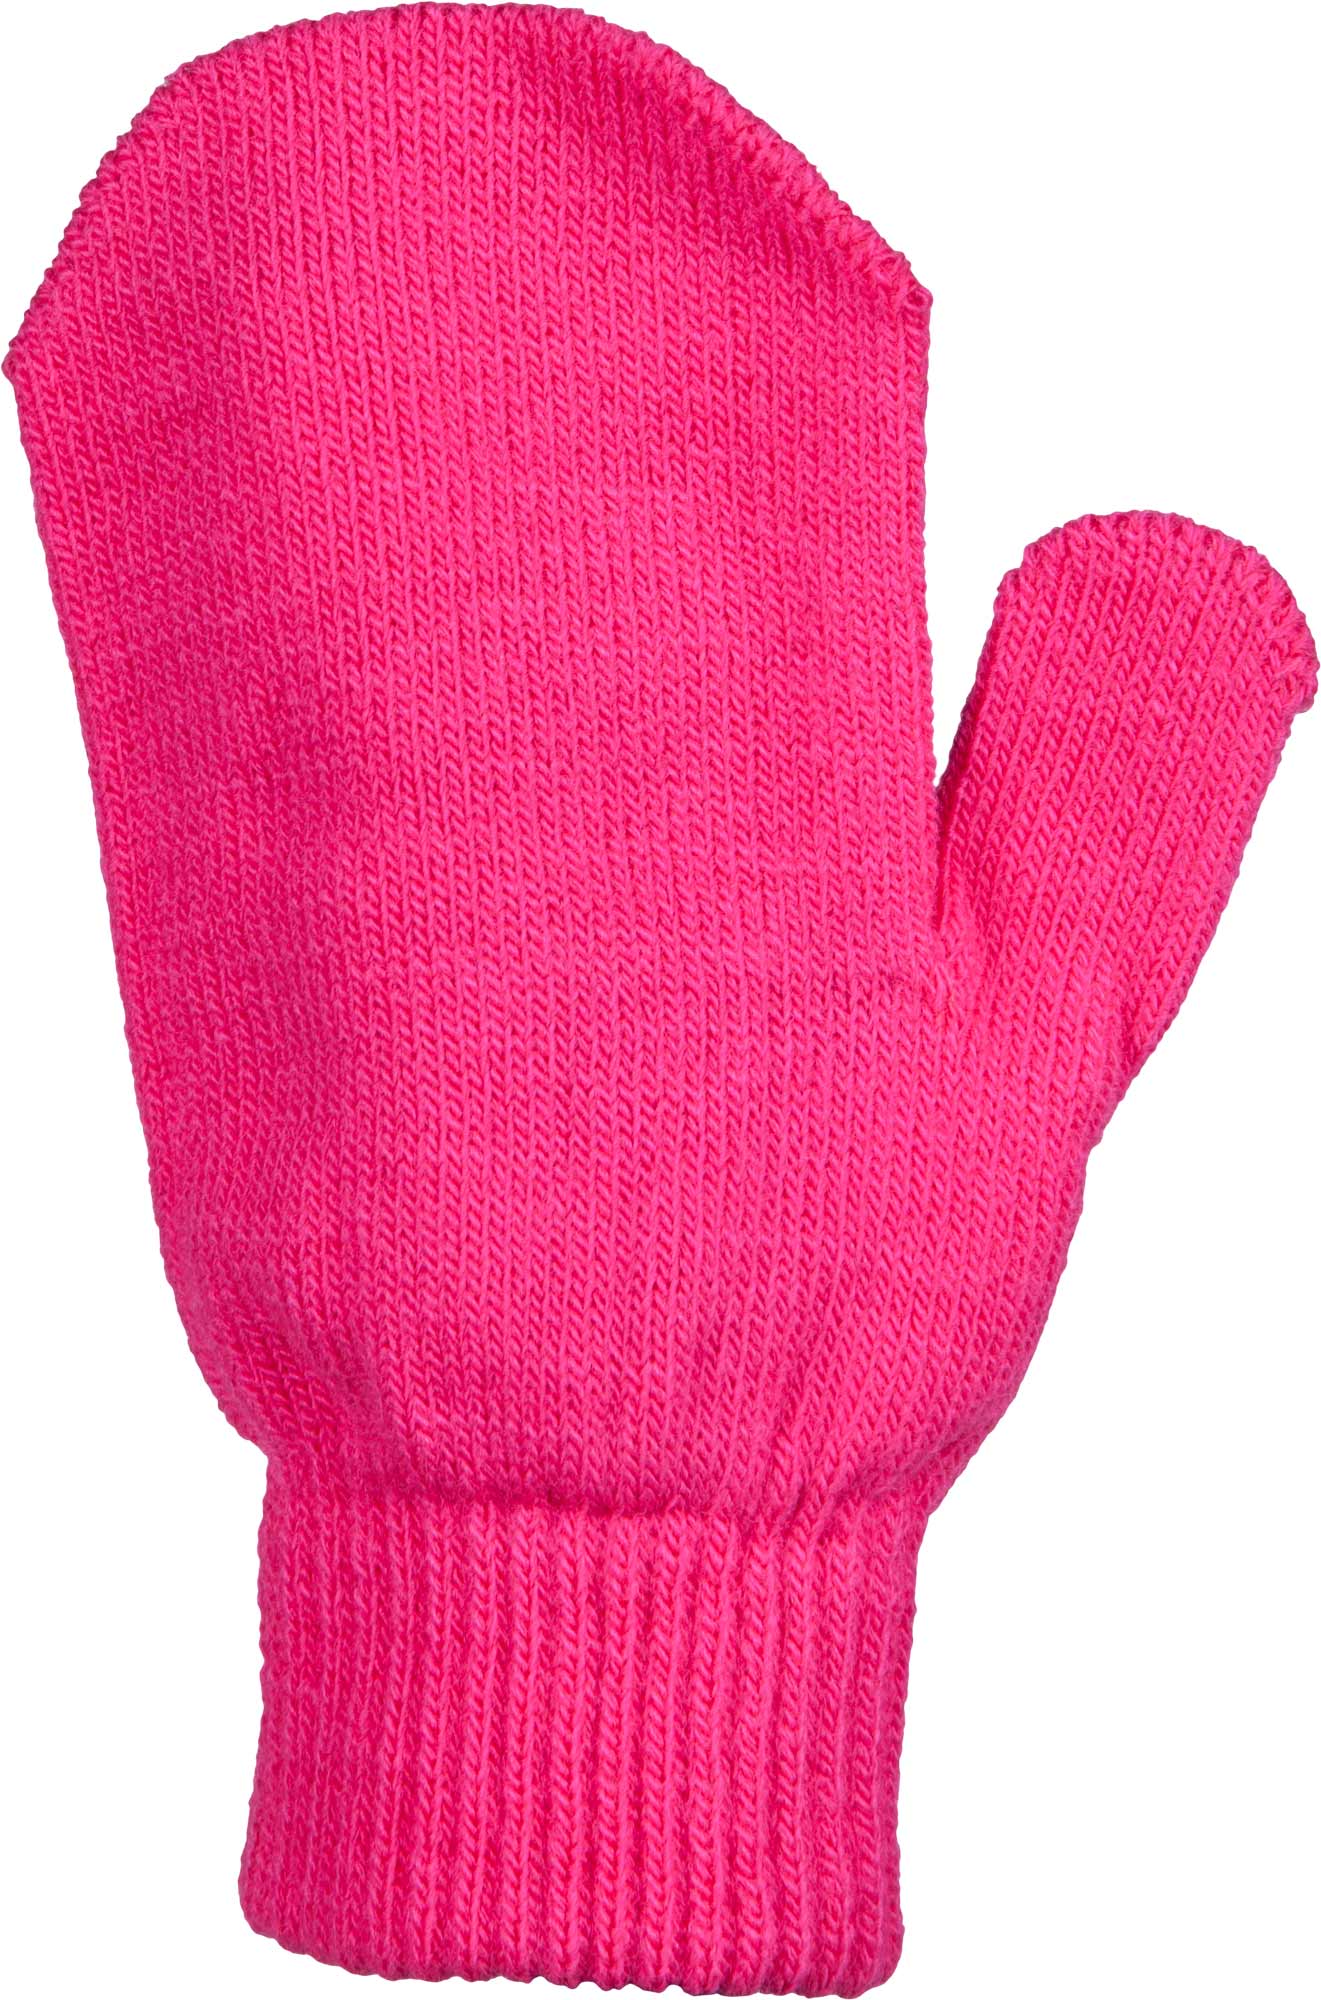 Children’s knitted mittens